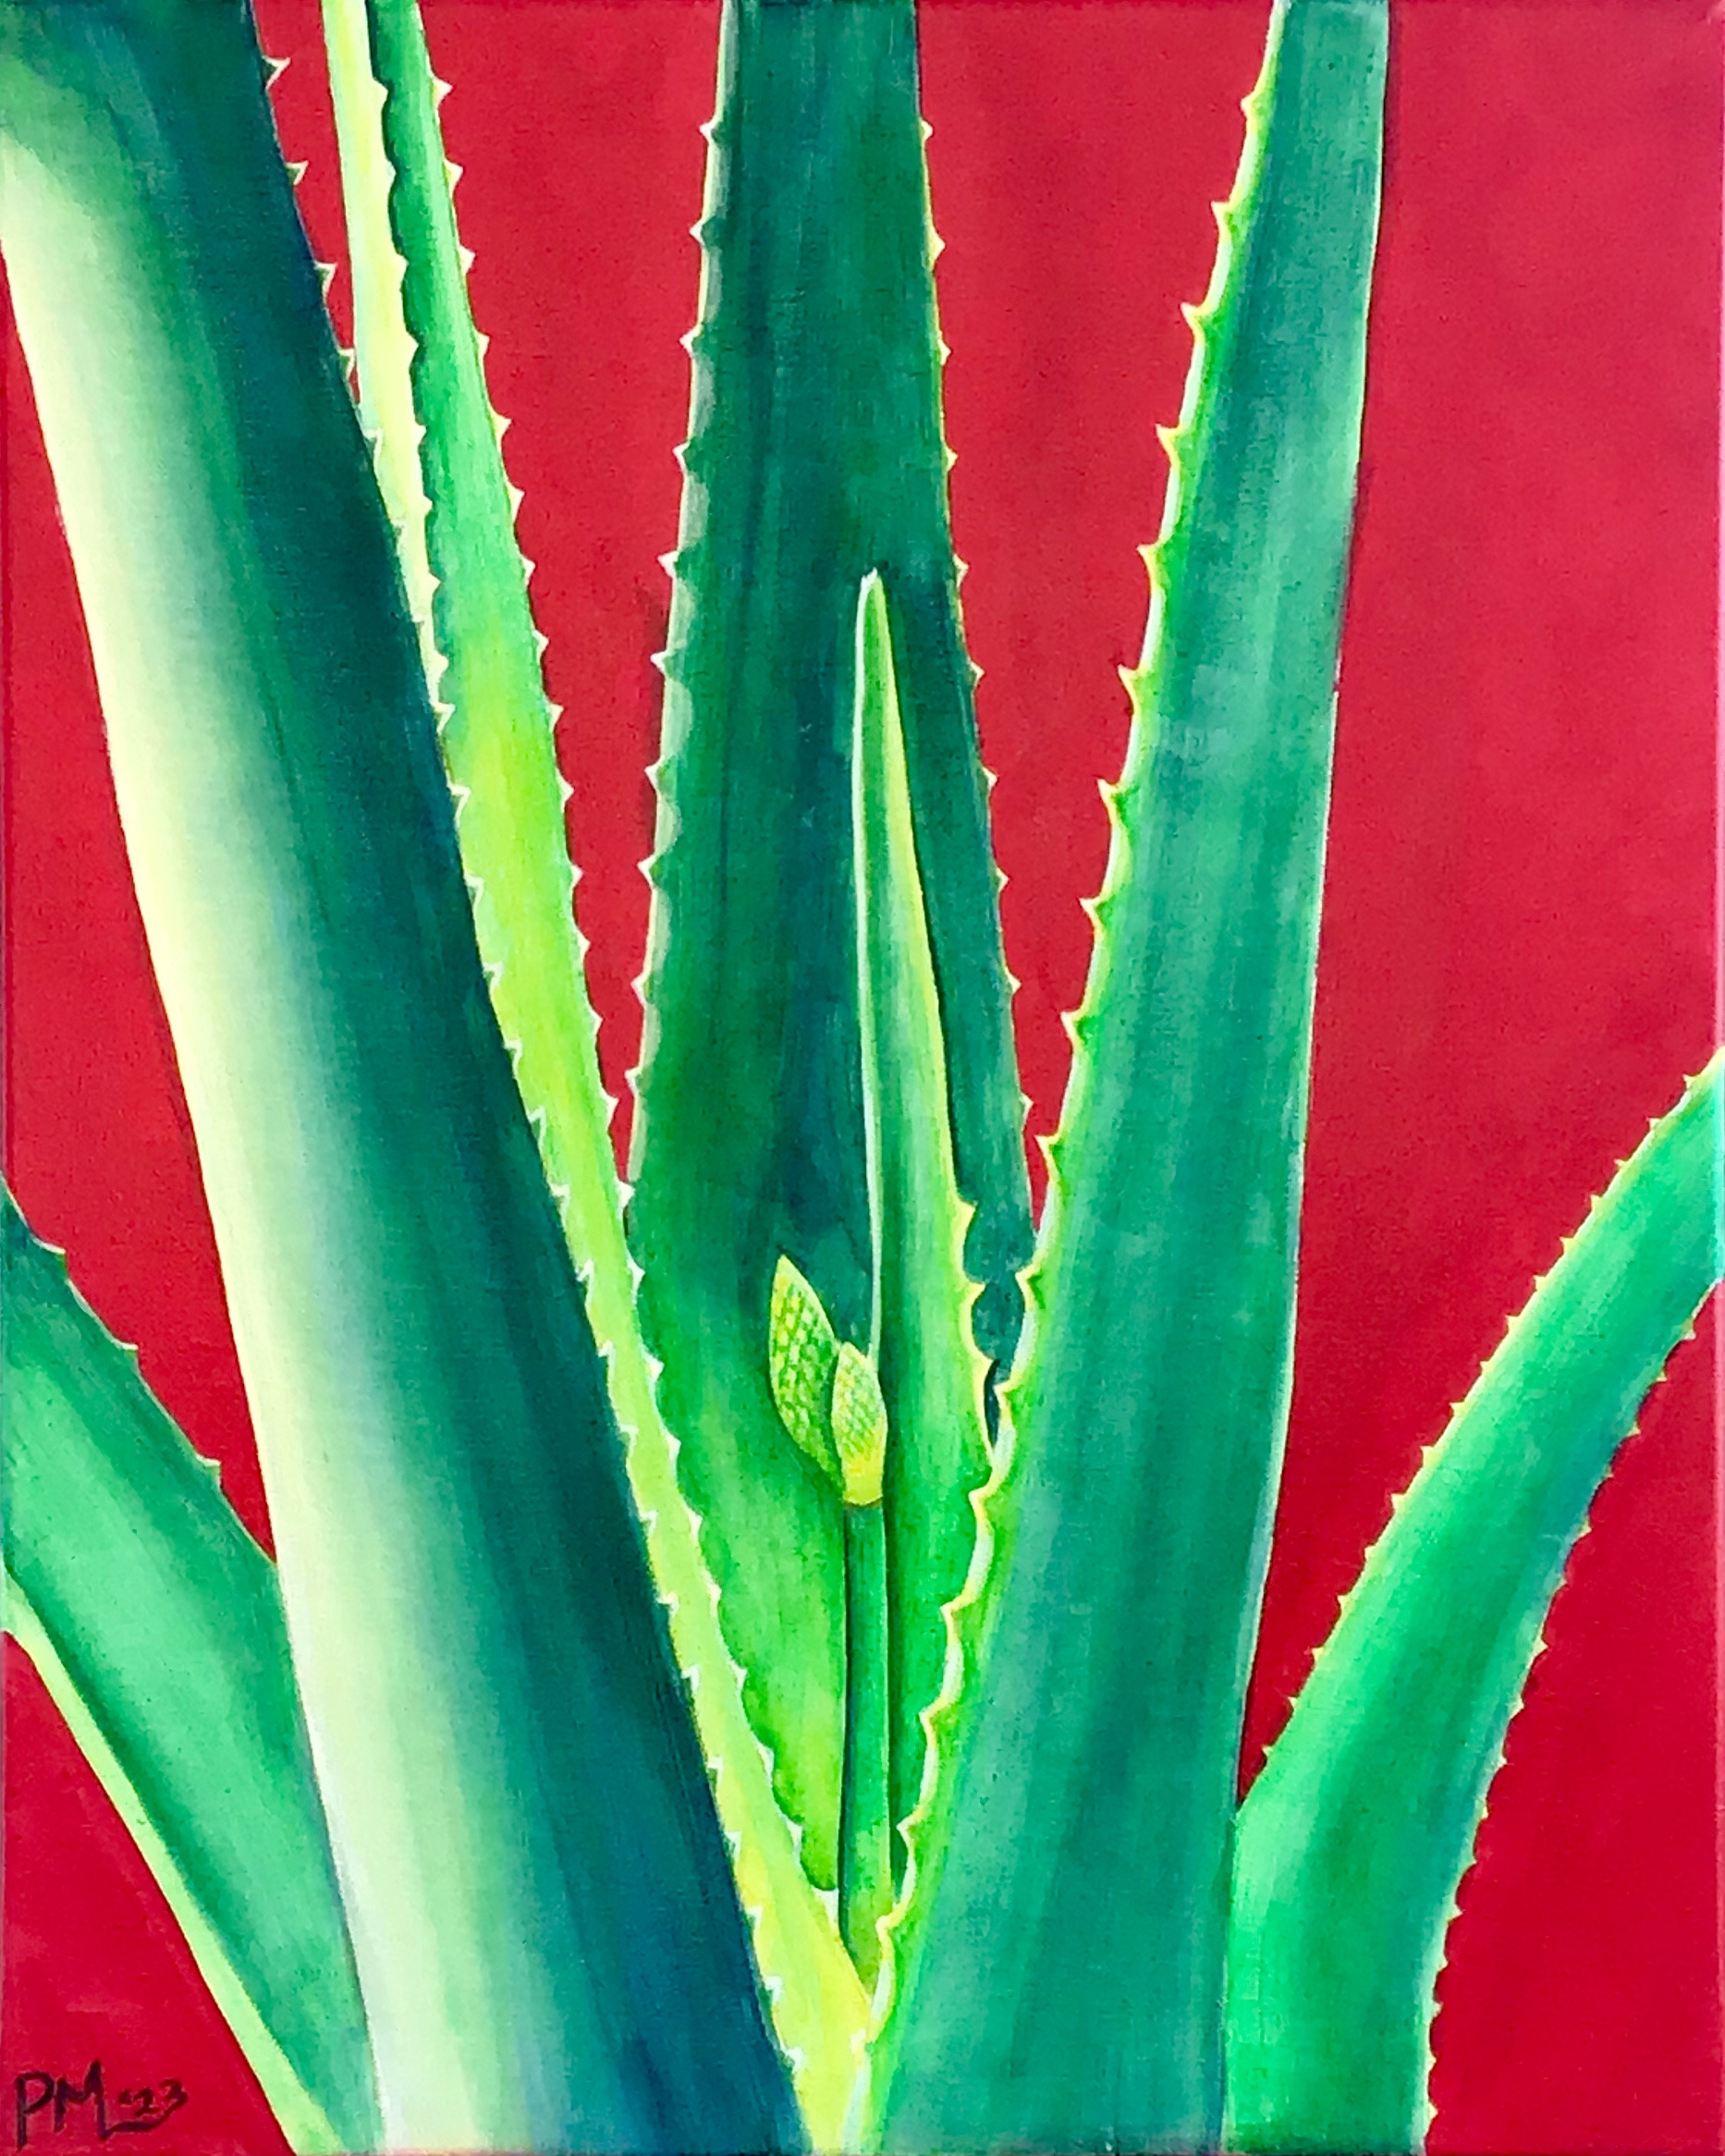 Aloe vera wnmofo